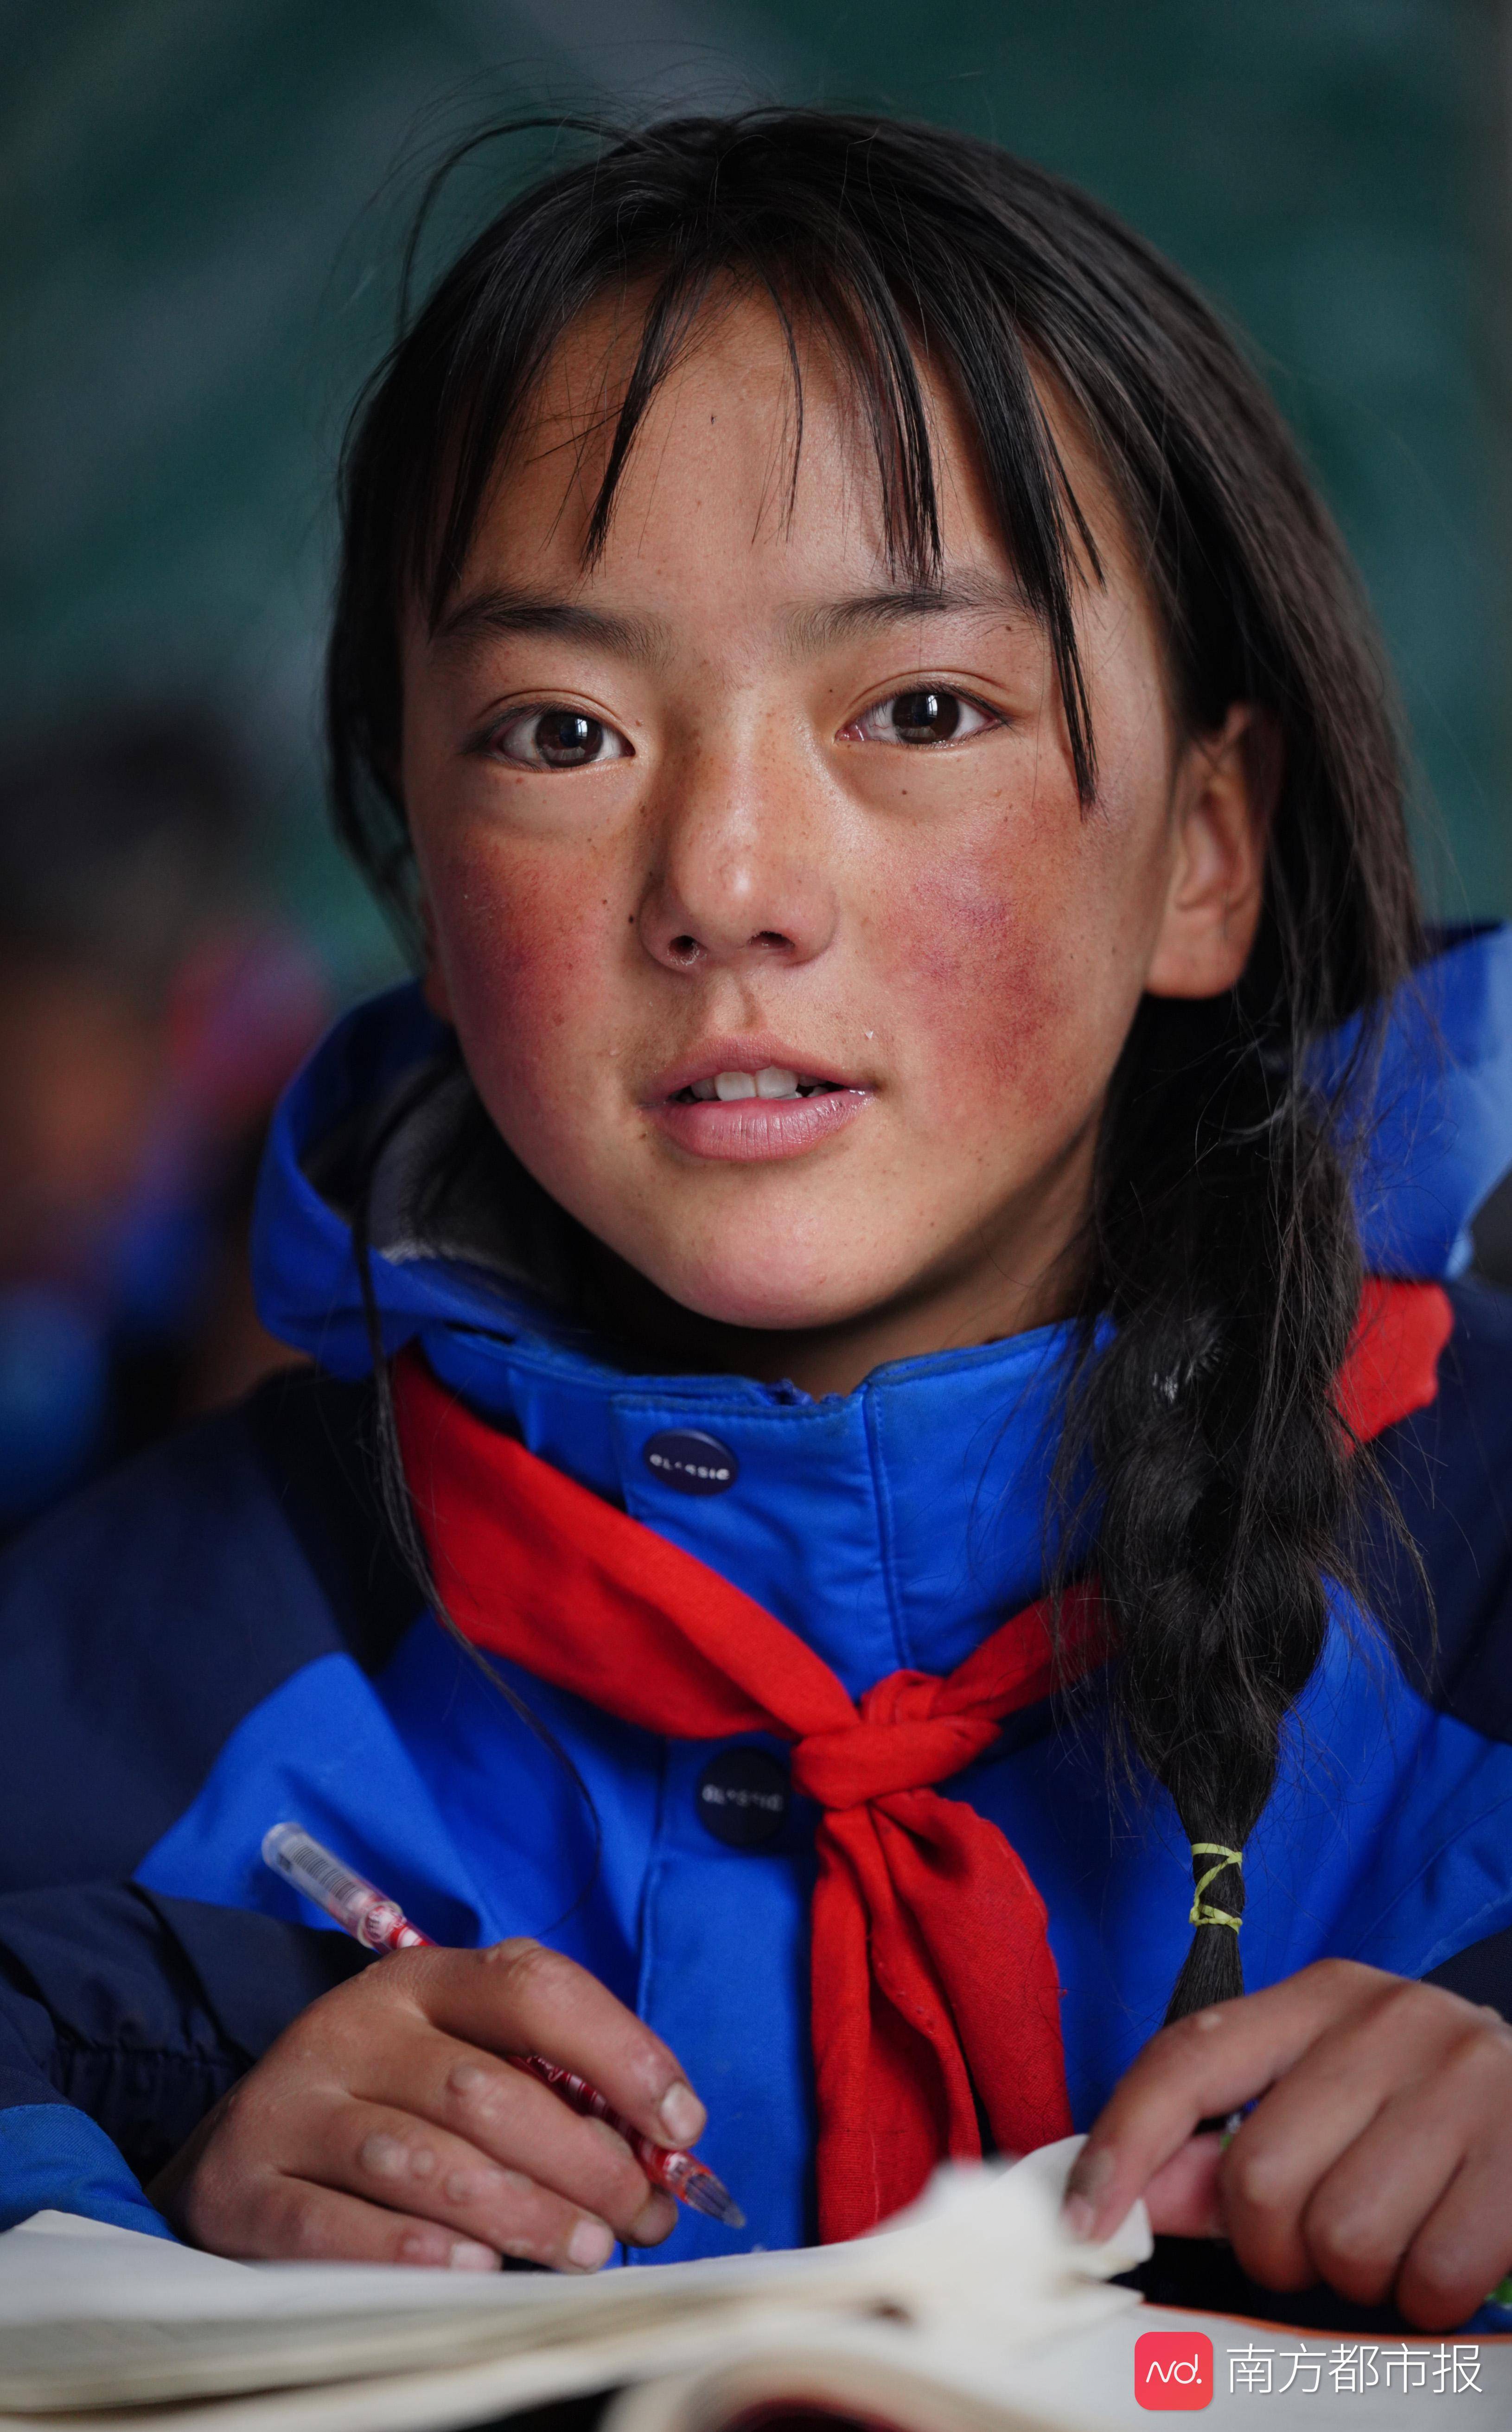 很多人都觉得藏族小孩脸上的"高原红"是一种特有的美,而事实却是缺氧